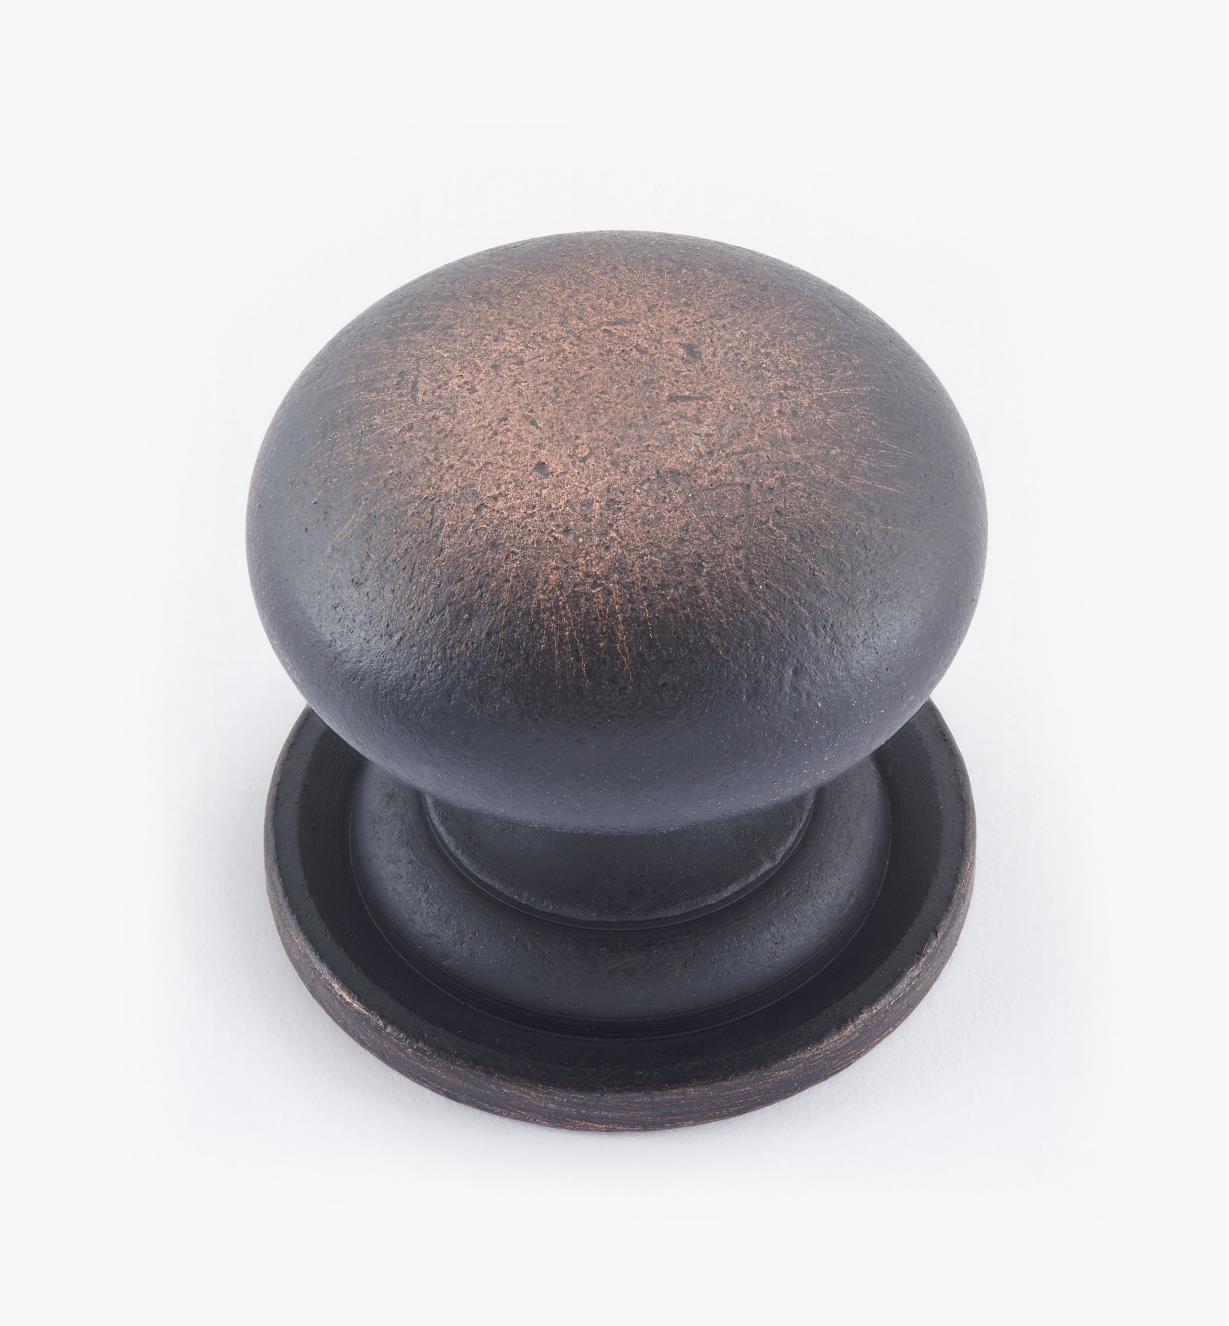 02W1553 - Bouton bombé en laiton de 1 3/8 po × 1 1/4 po, fini vieux bronze